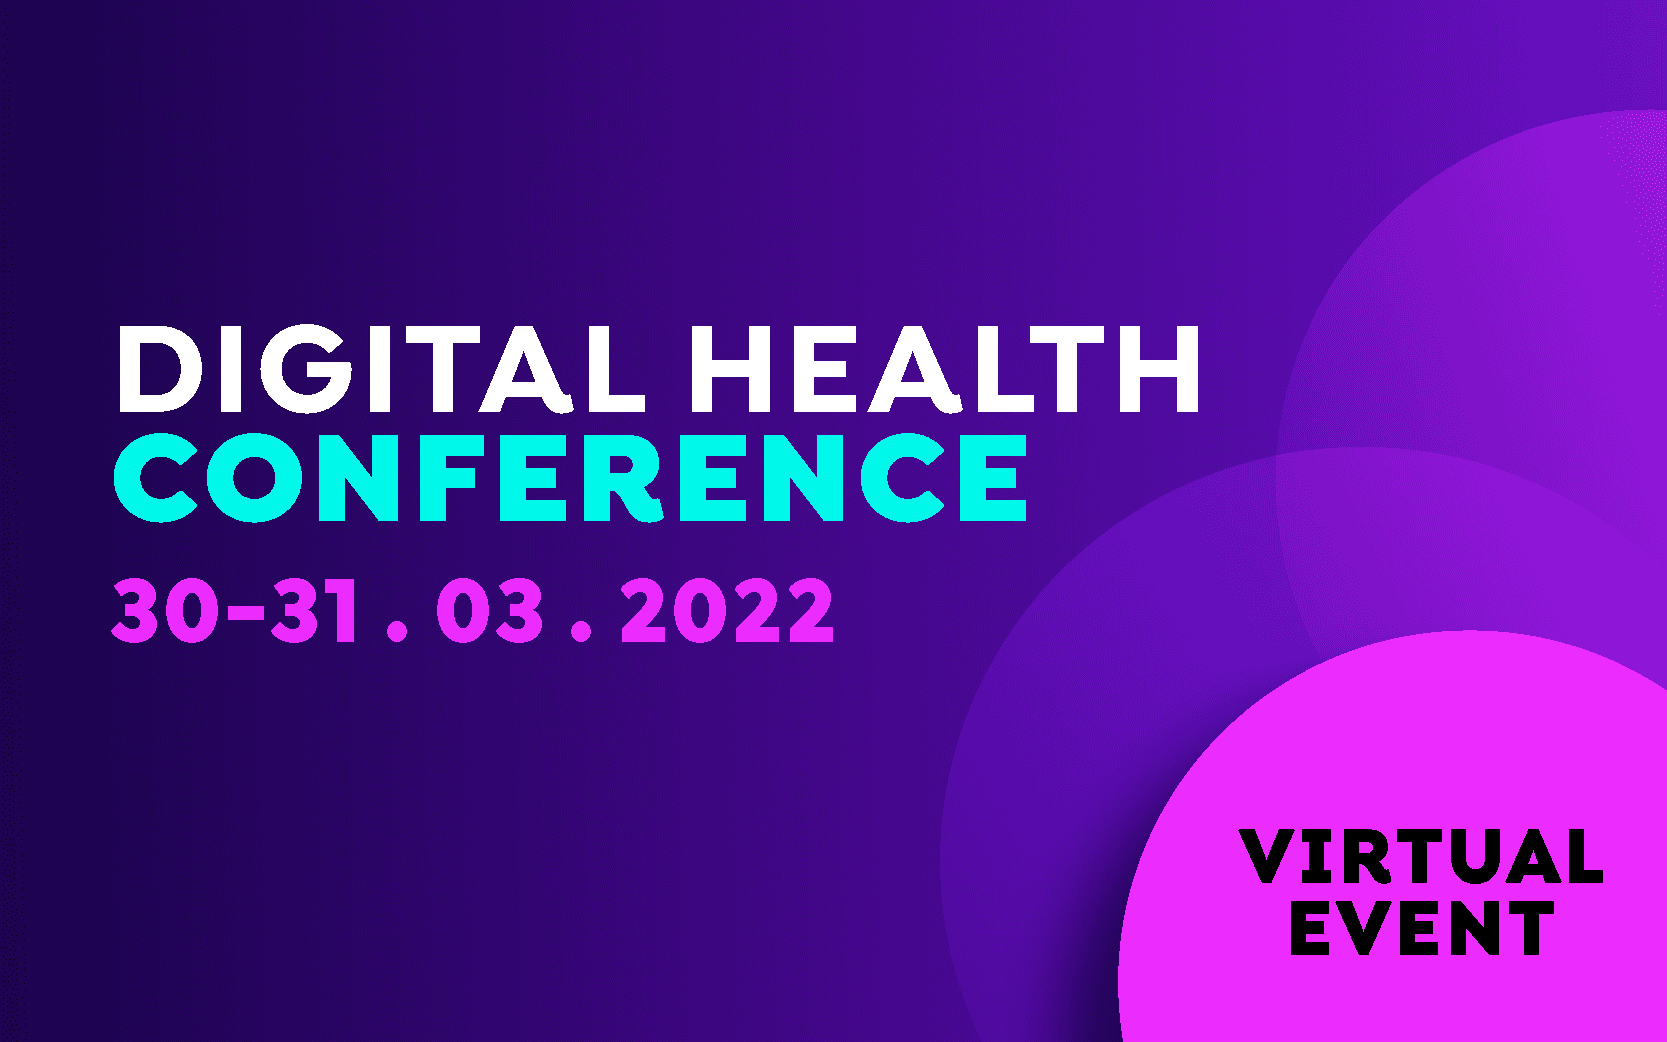 Digital health week